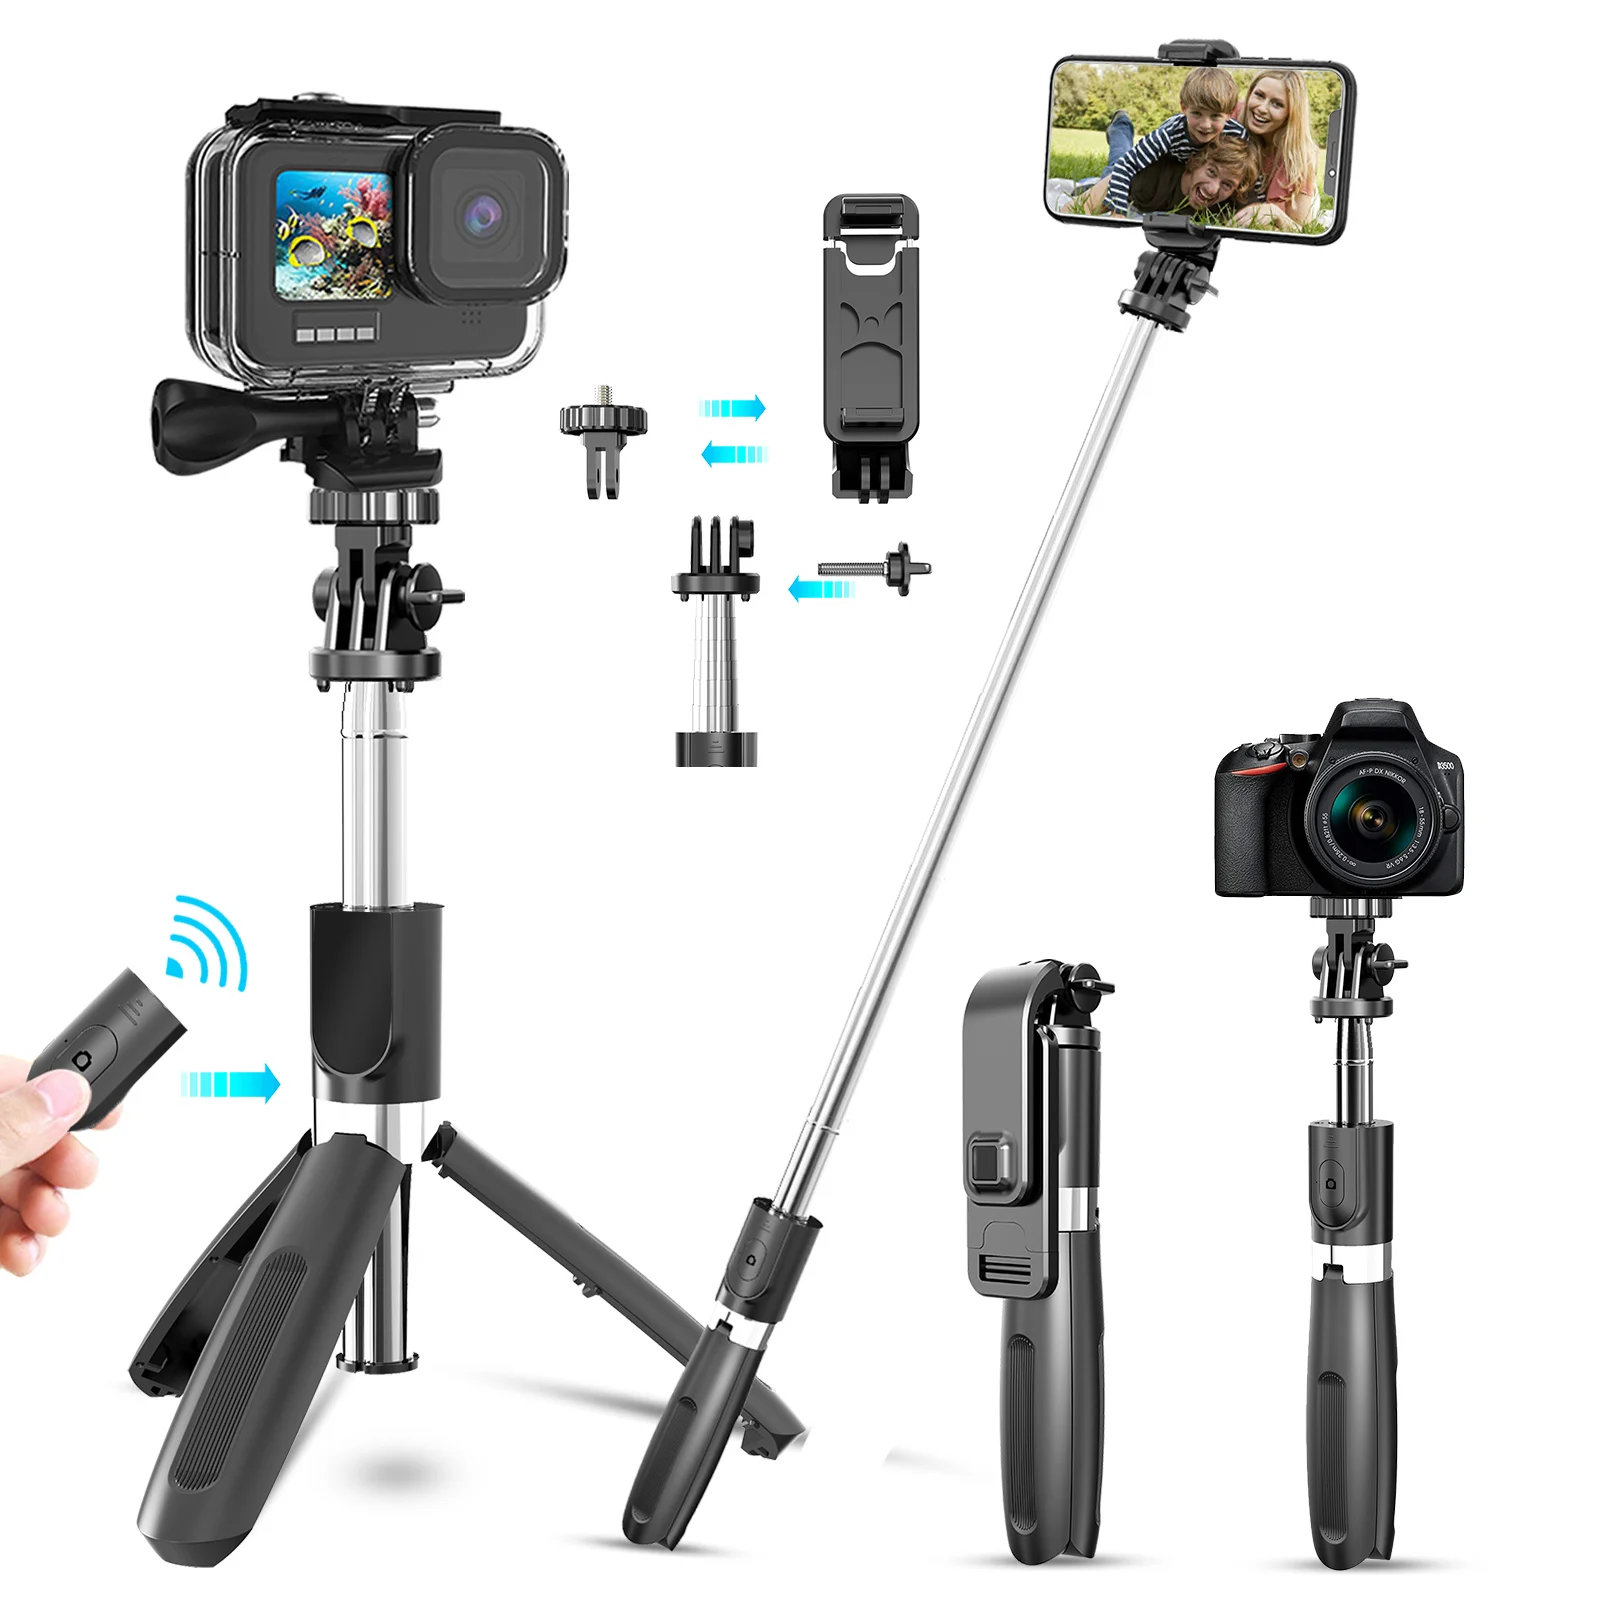 

Palo de selfi monopié con trípode para móvil, trípode telescópico inalámbrico de viaje con Bluetooth para cámara de teléfono iPh